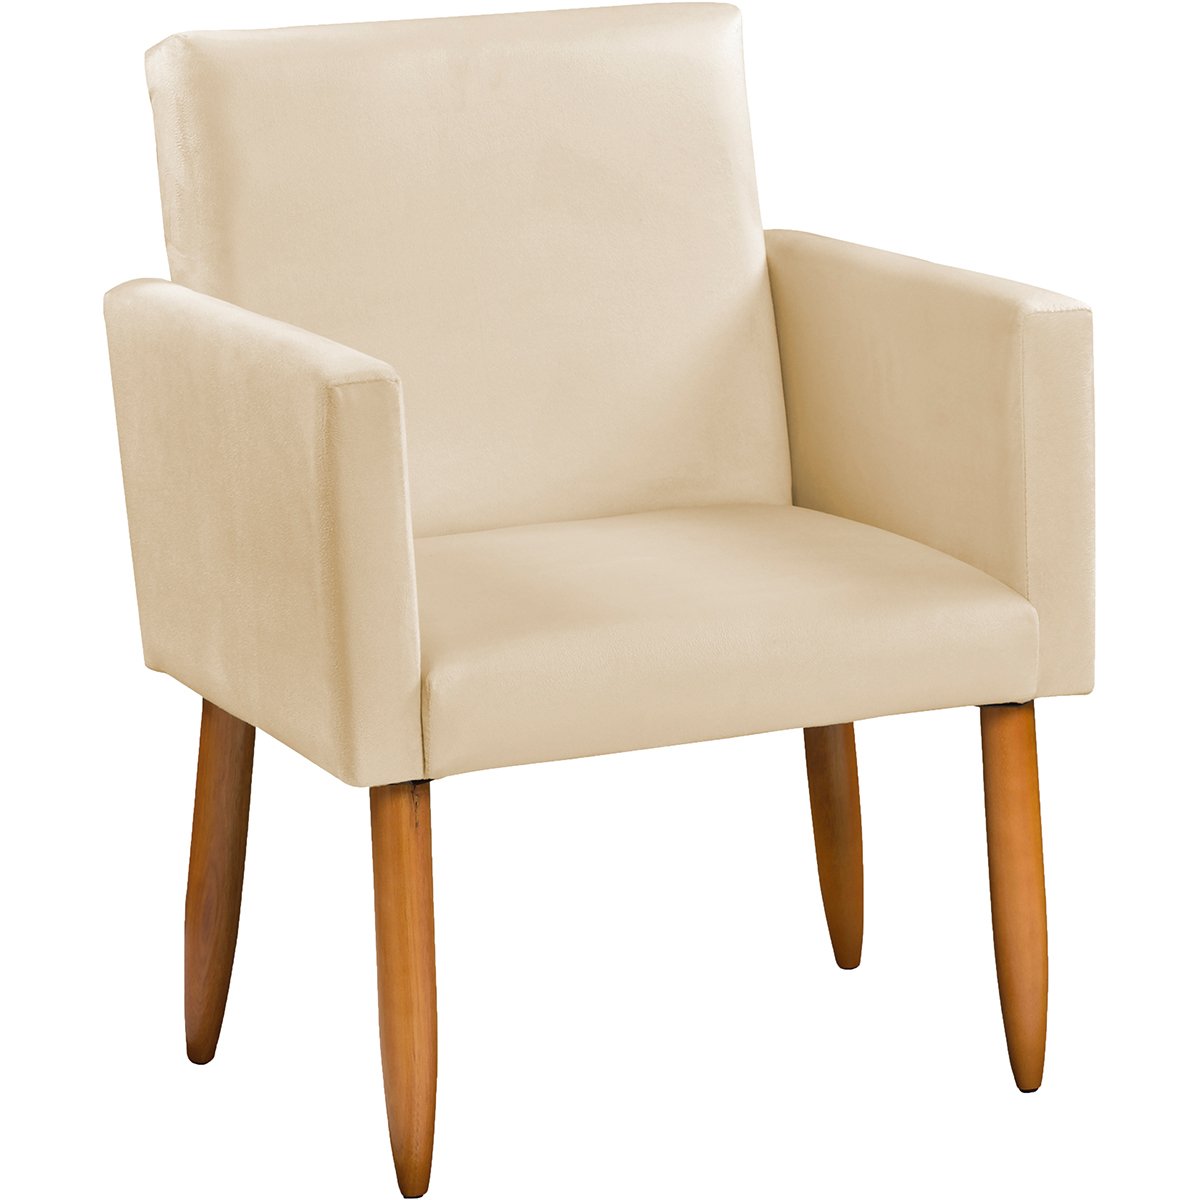 Poltrona Cadeira Decorativa Nina Reforçada Para Recepção Suede Bege Pé Castanho Clique E Decore - 2